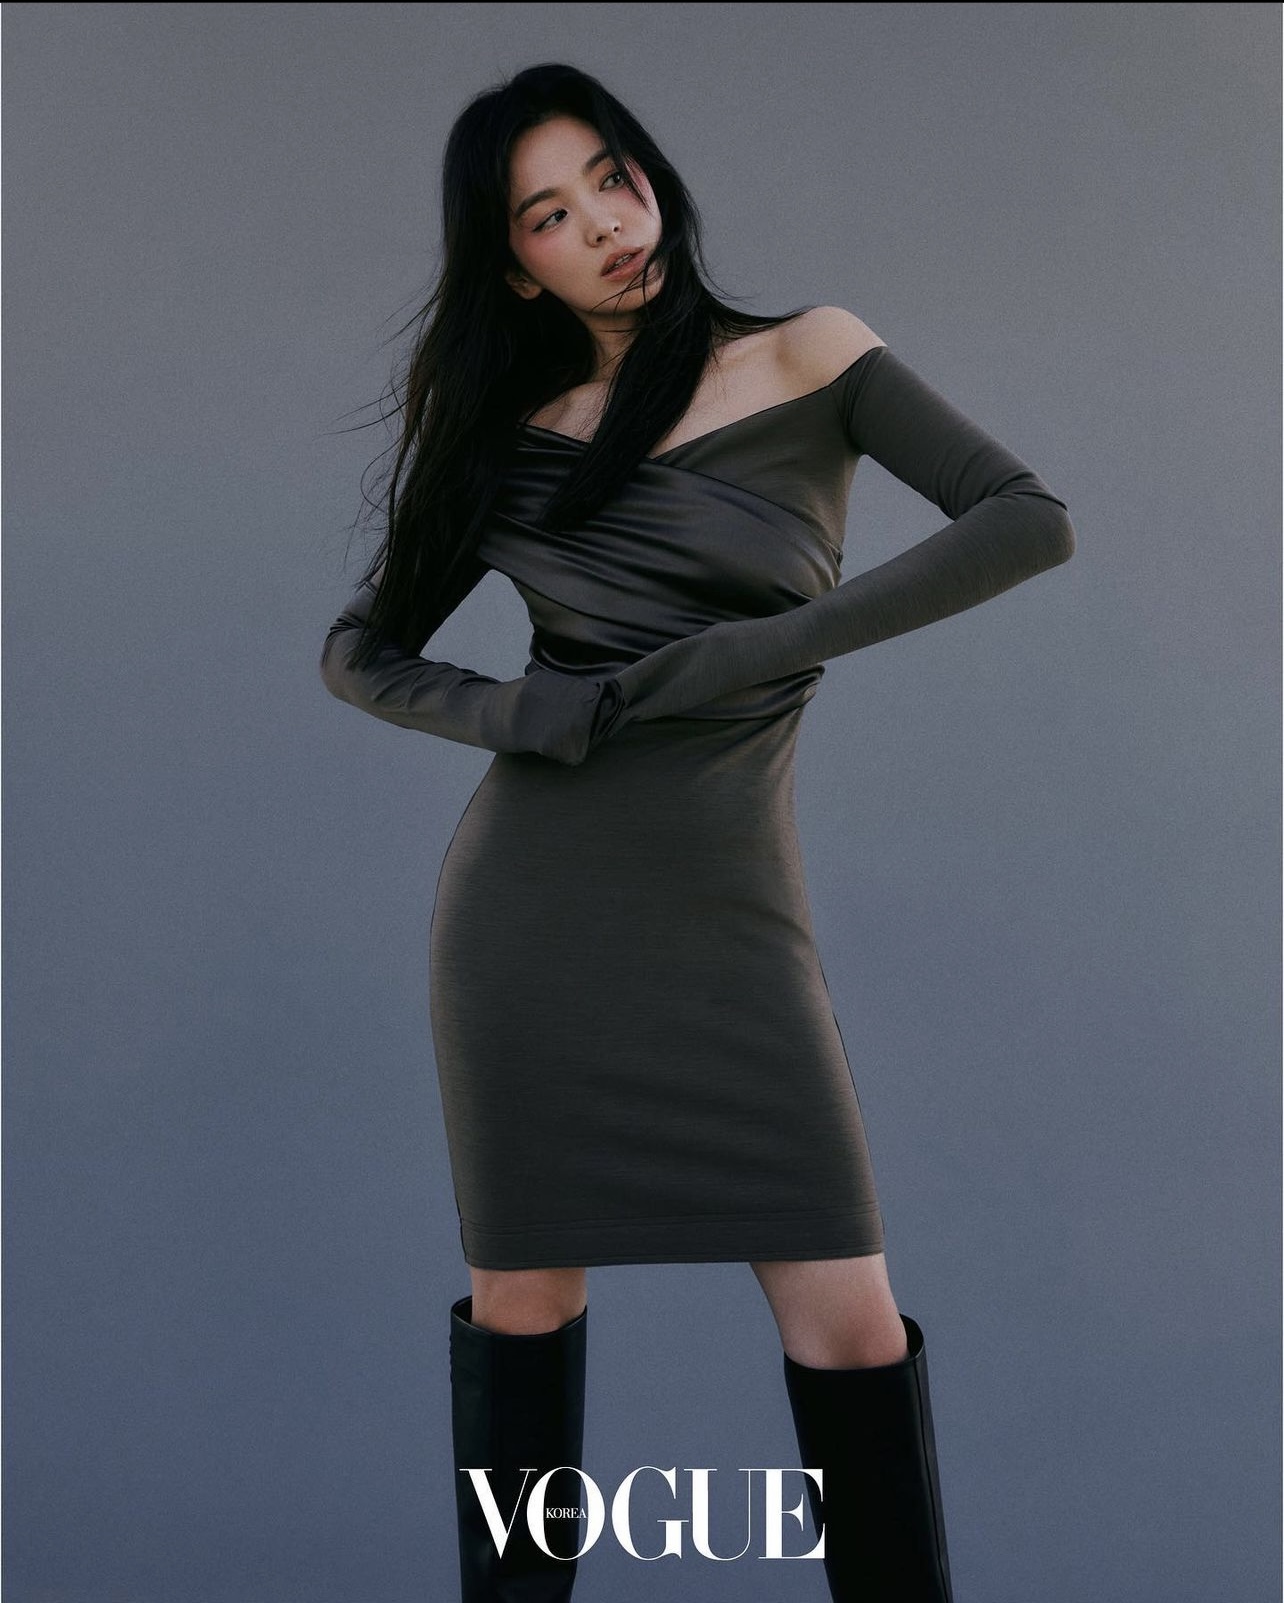 7749 outfit đẳng cấp chứng minh Song Hye Kyo là đại sứ hoàn hảo của Fendi - Ảnh 15.